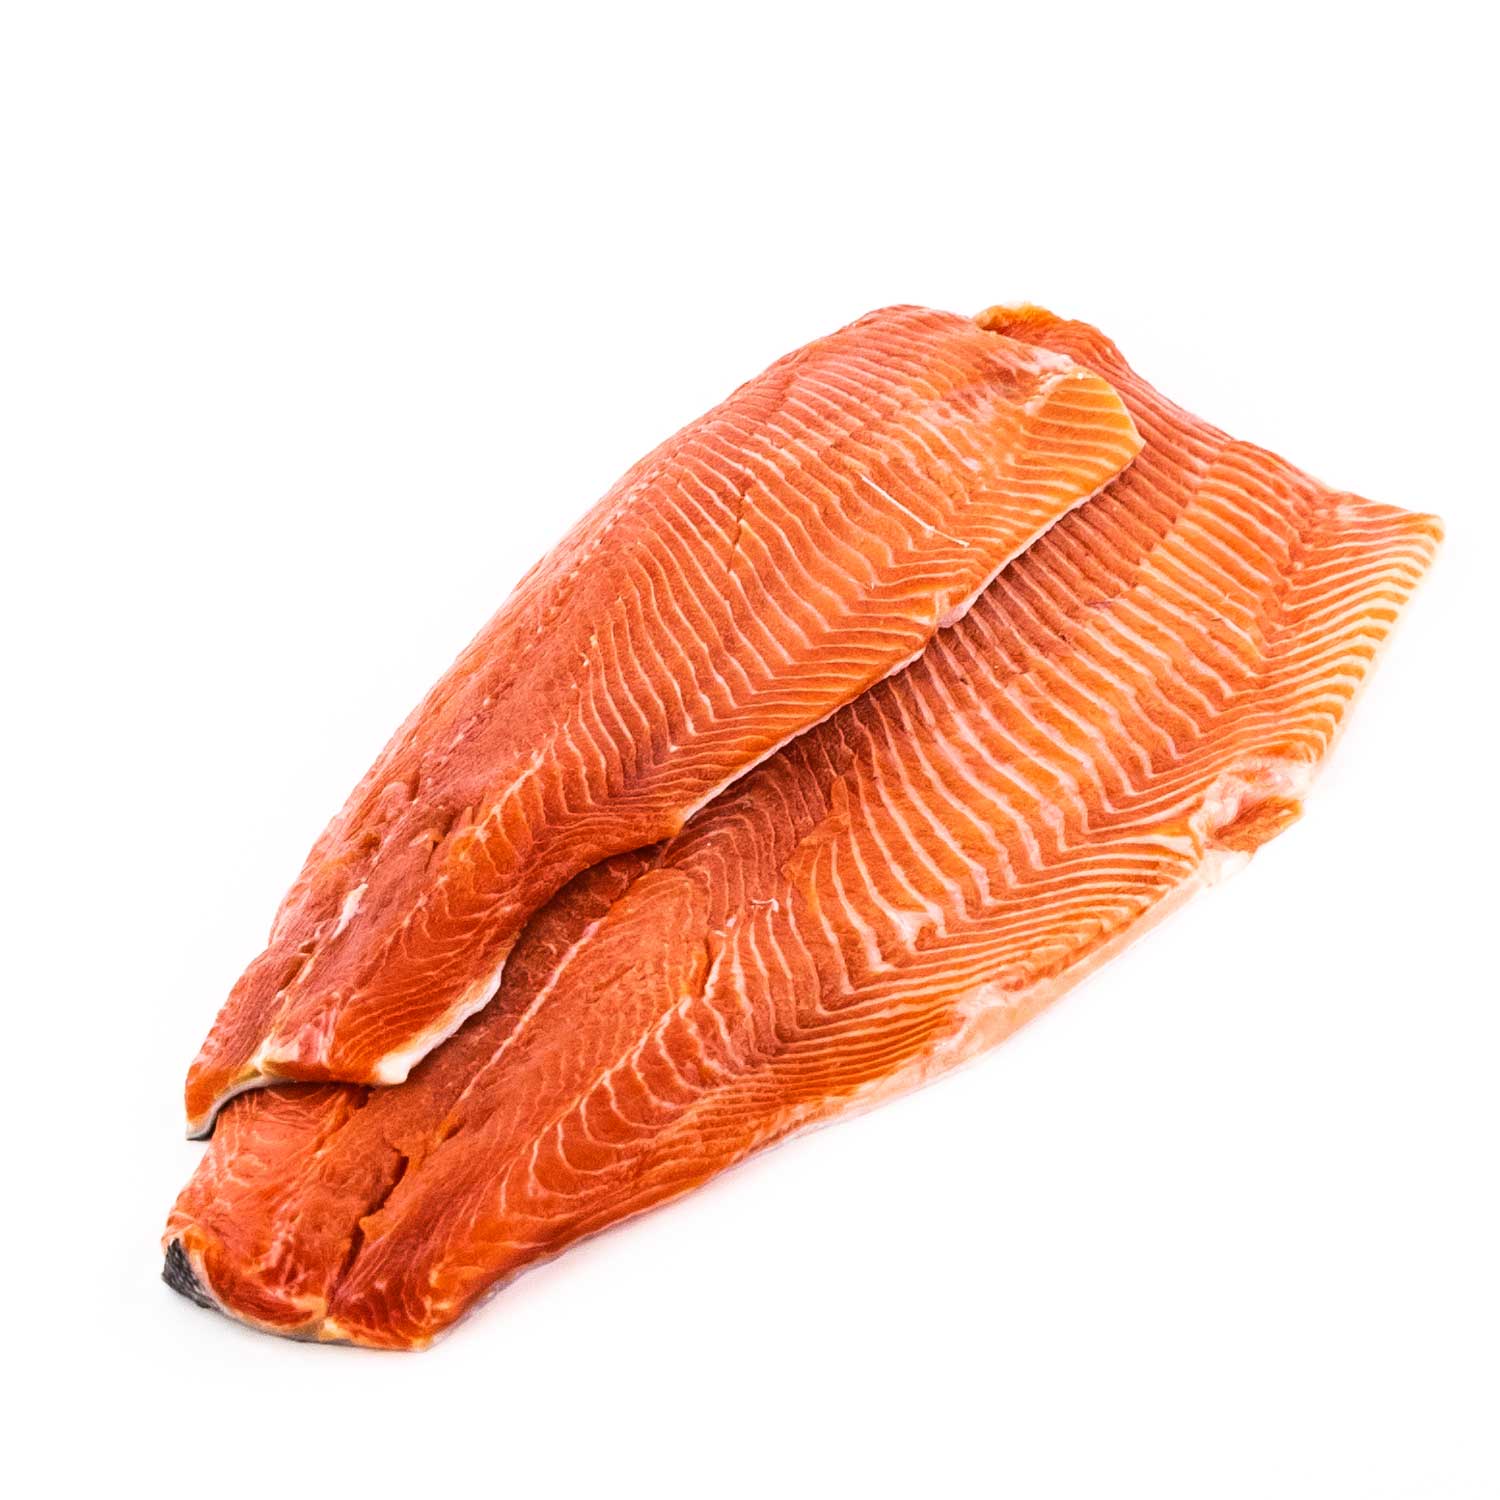 Fresh Salmon Trout Fillet Value Pack 1 kg - Trout